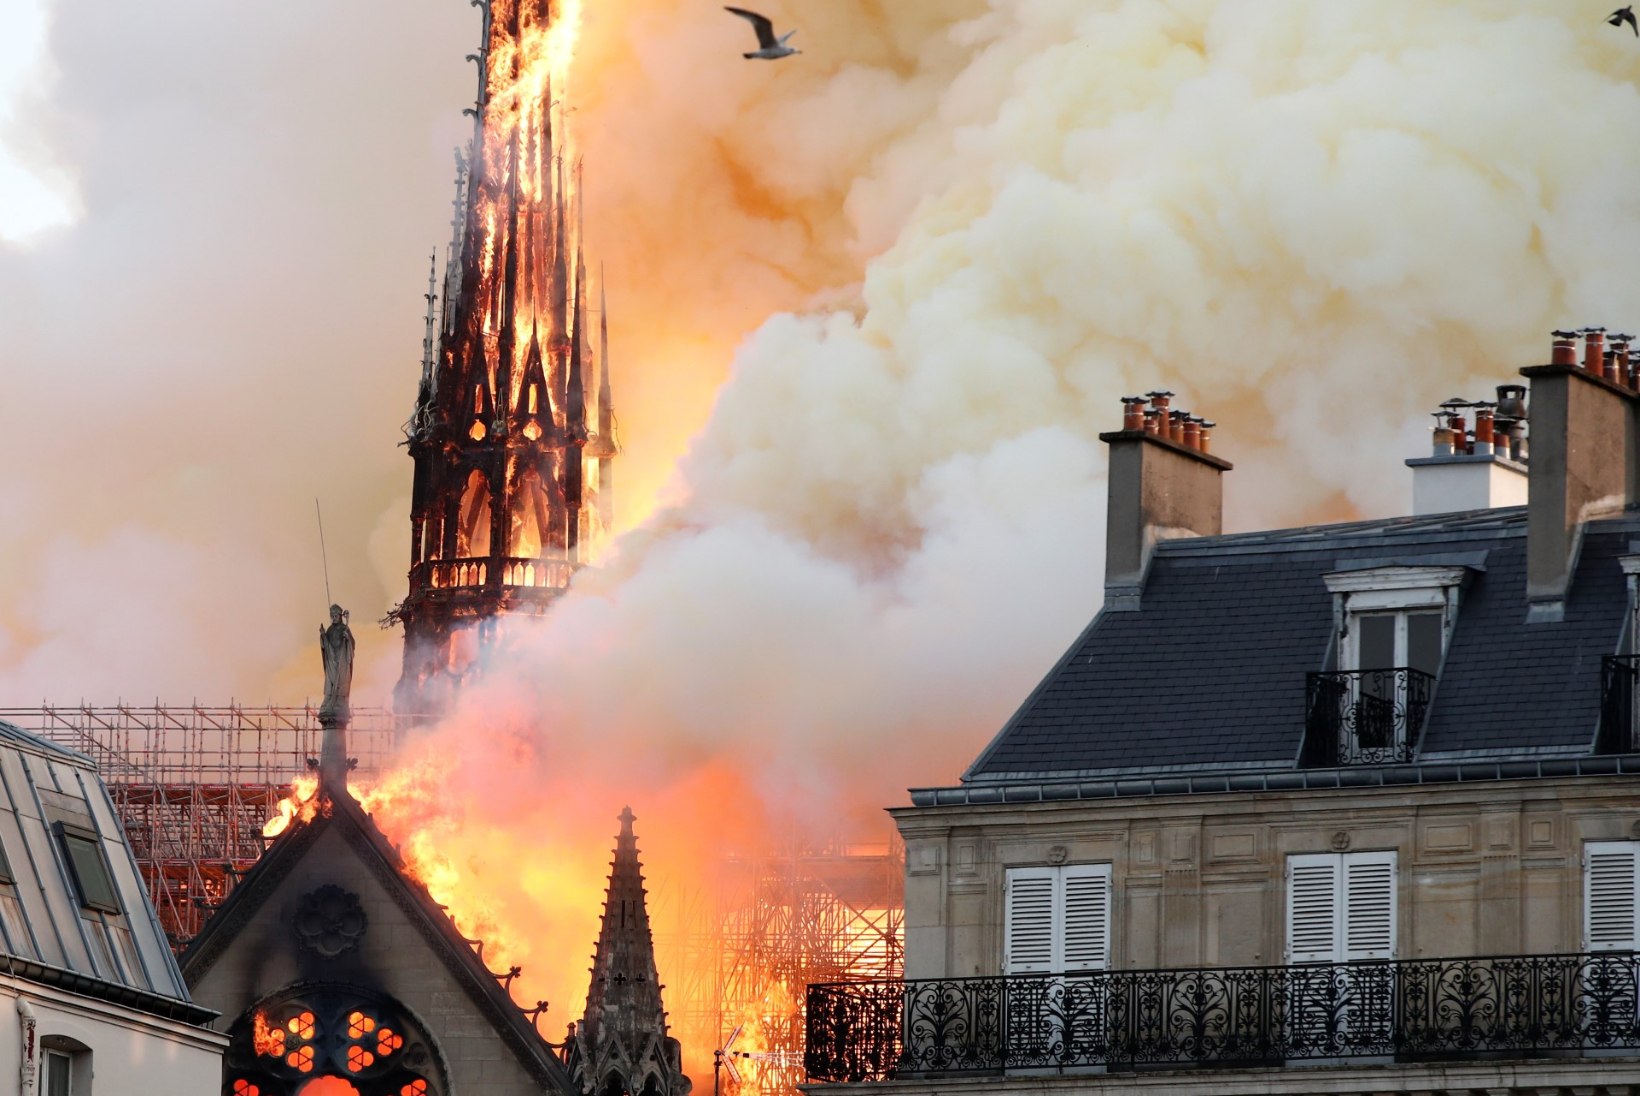 Pariisi eestlanna Jumalaema kirikust: arvasin, et see on aprillinali, aga siis nägin aknast põlengut